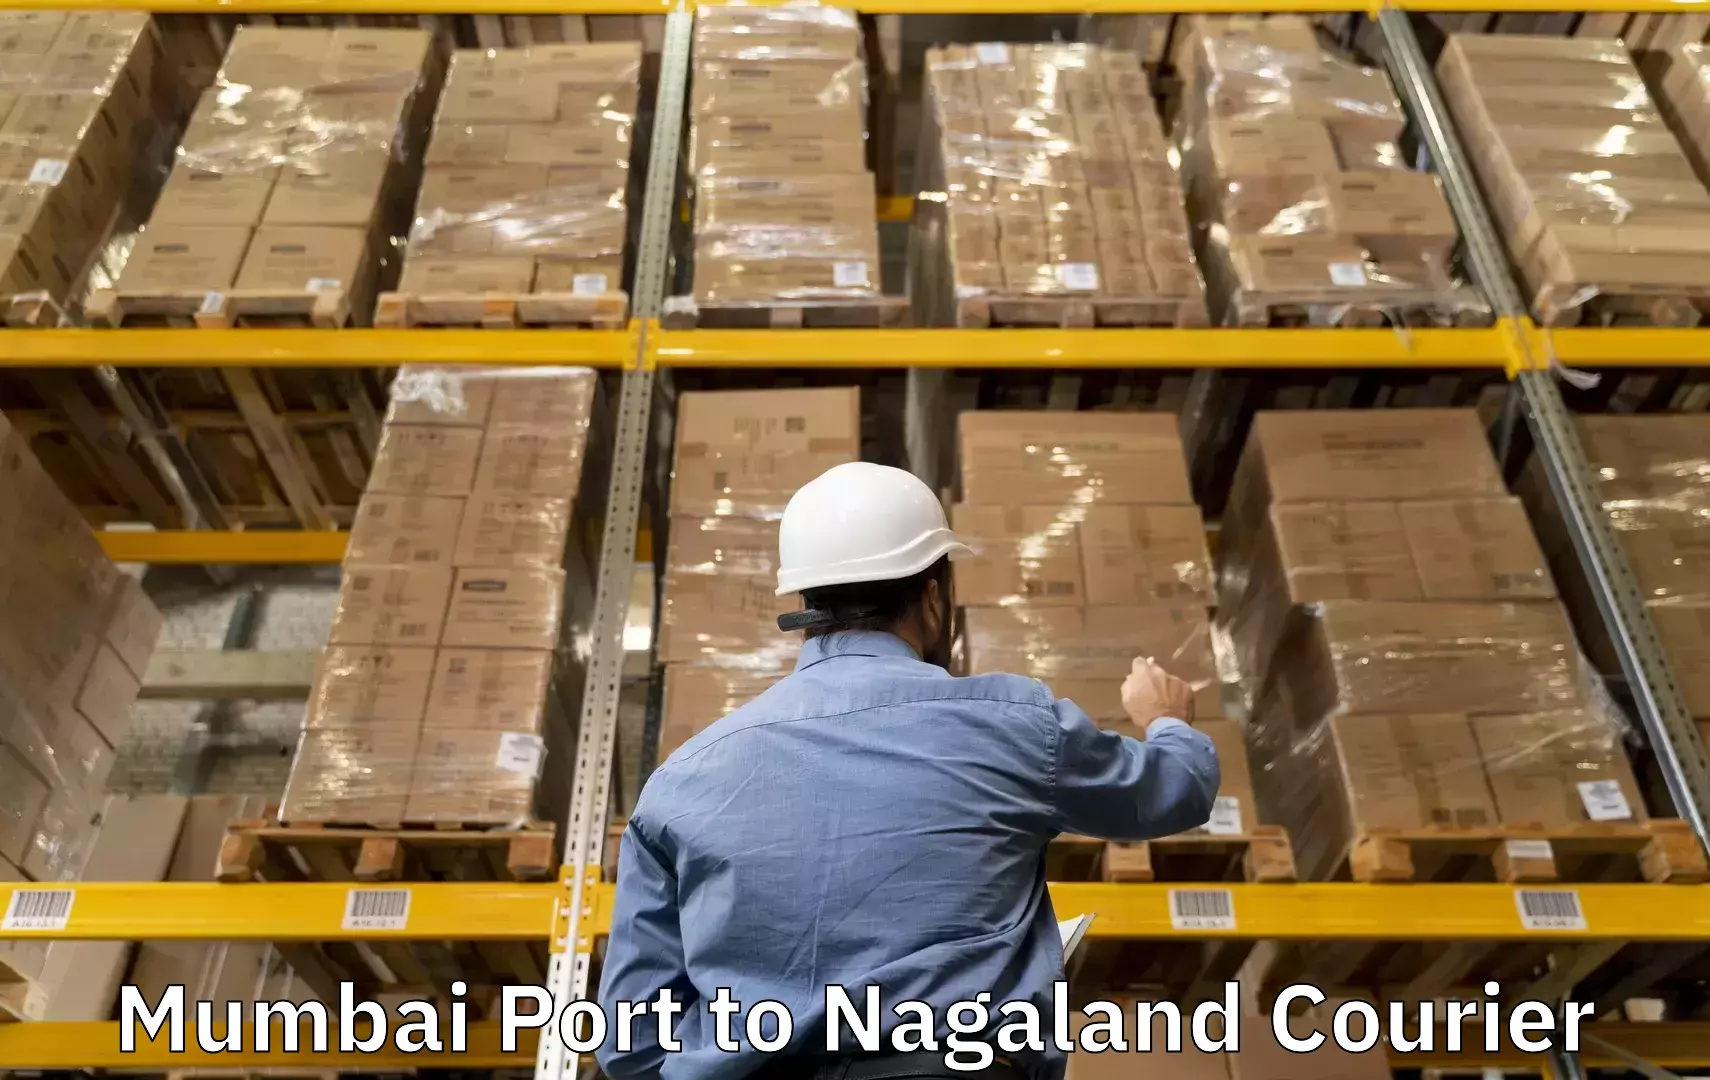 Luggage transport deals Mumbai Port to Kohima